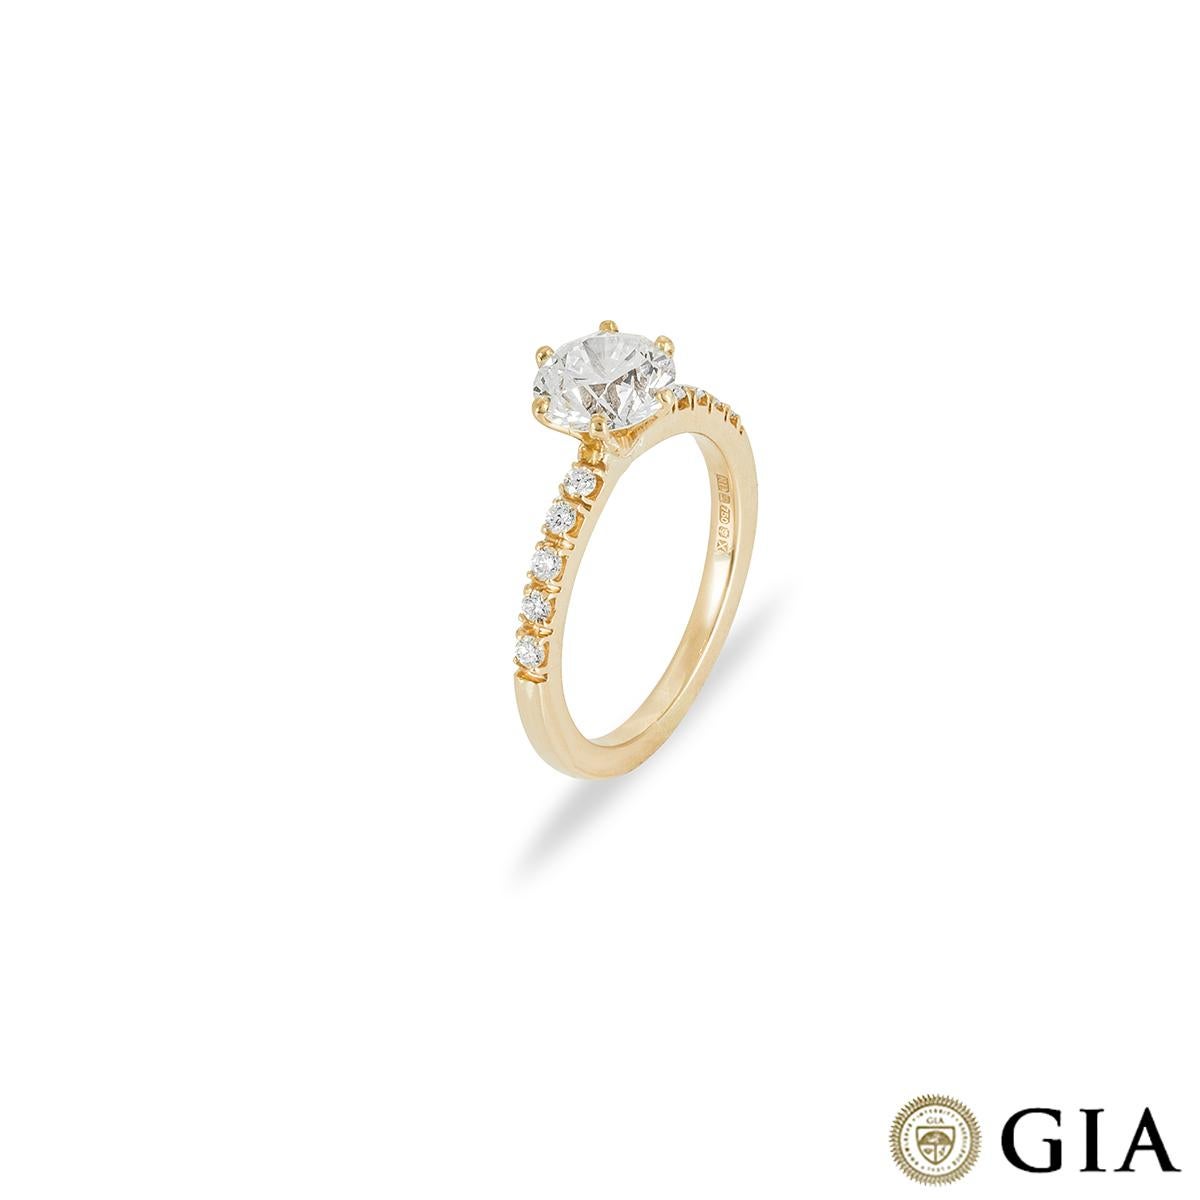 Ein funkelnder Verlobungsring aus 18 Karat Gelbgold mit Diamanten. Der Ring ist in der Mitte mit einem runden Diamanten im Brillantschliff in einer klassischen 6-Krallen-Fassung mit einem Gewicht von 1,57ct, Farbe G und Reinheit VS2 besetzt. Ergänzt